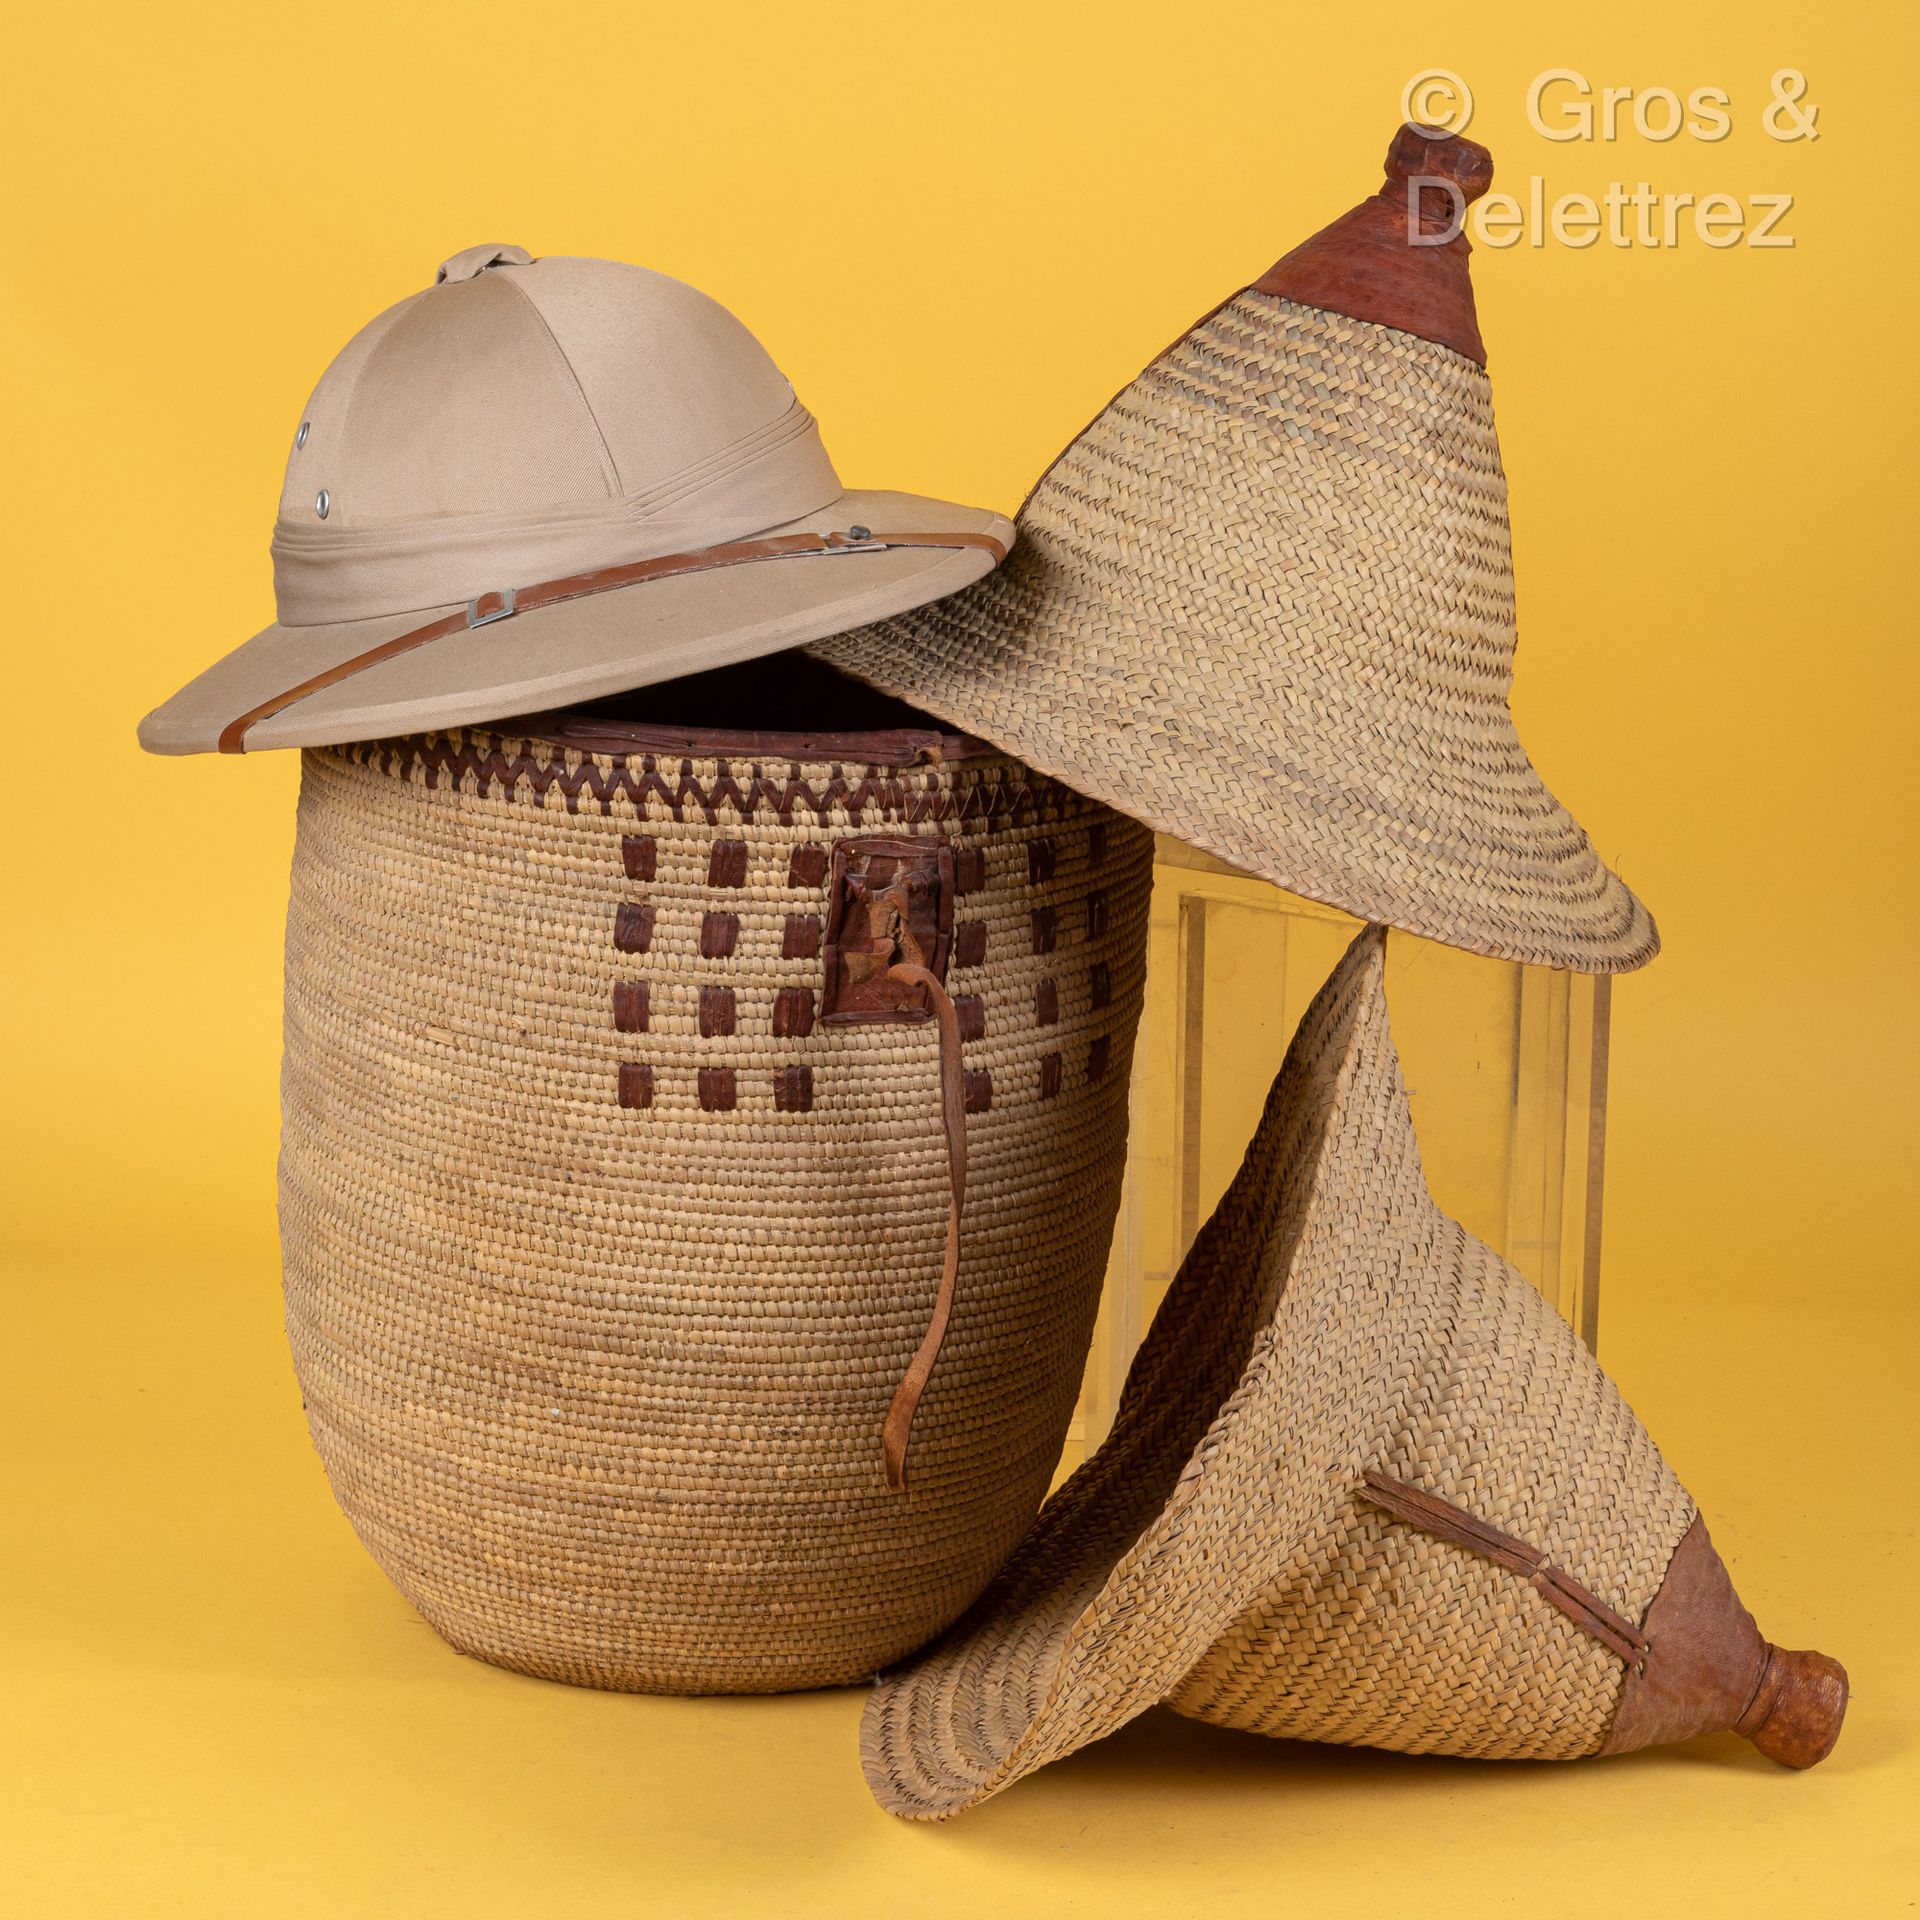 TCHAD 殖民地时期的帽子，由织物制成。
附有两顶草帽。